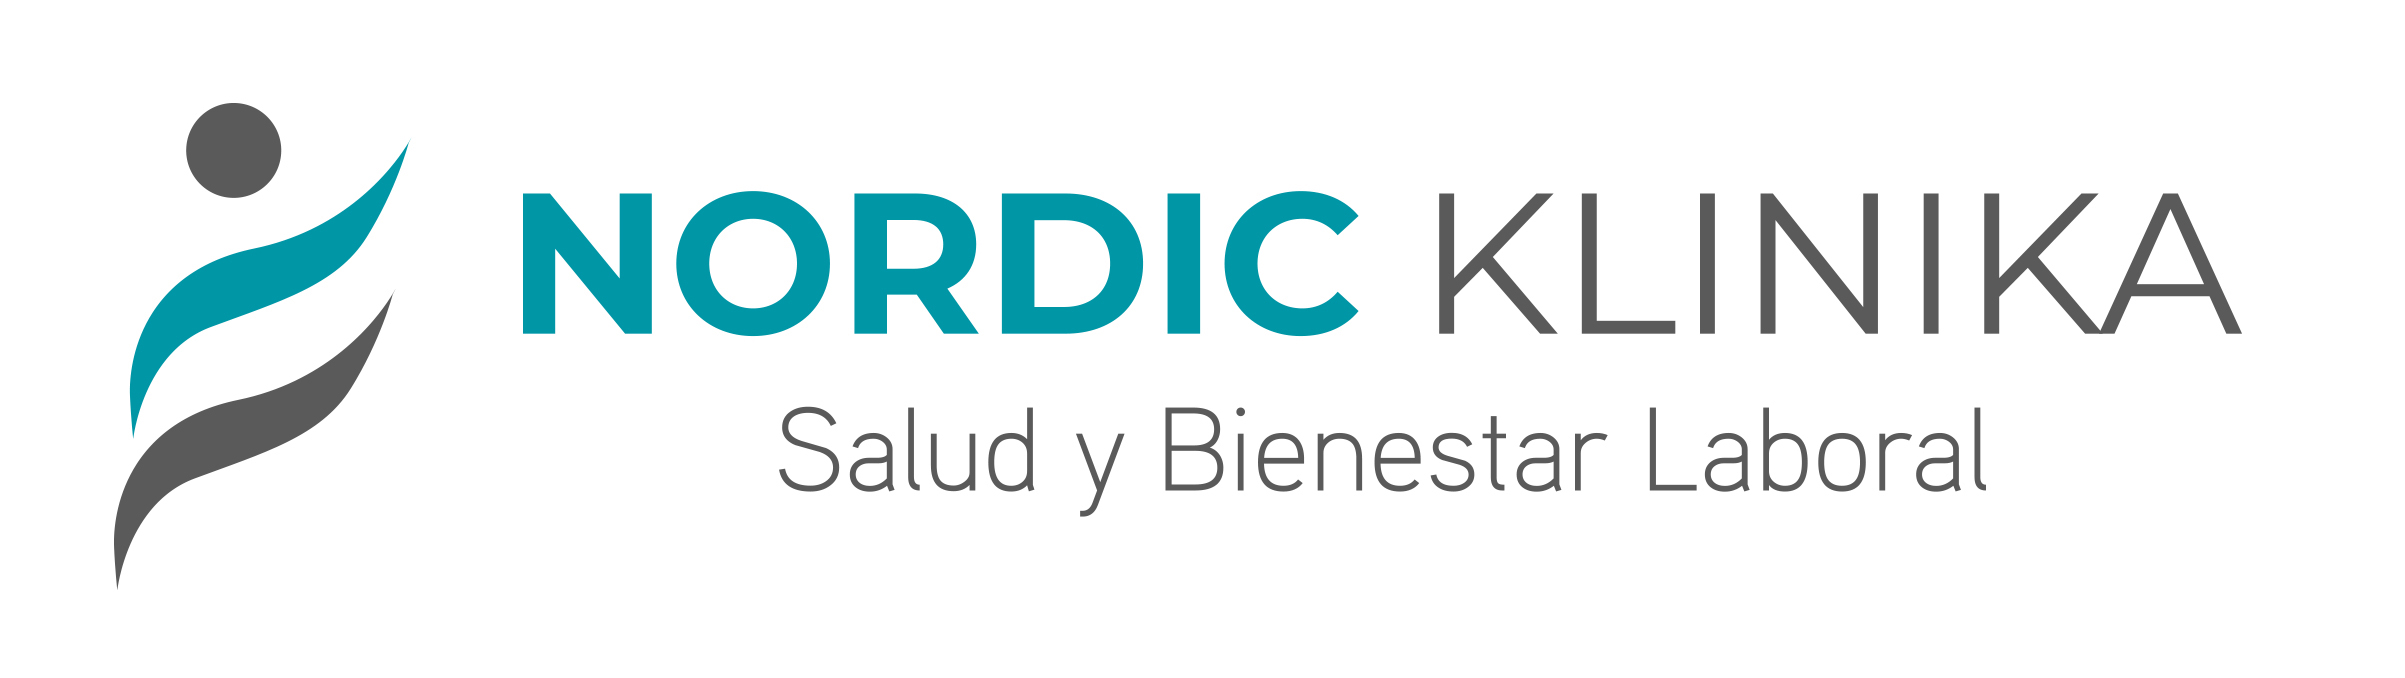 logo Nordic Klinika